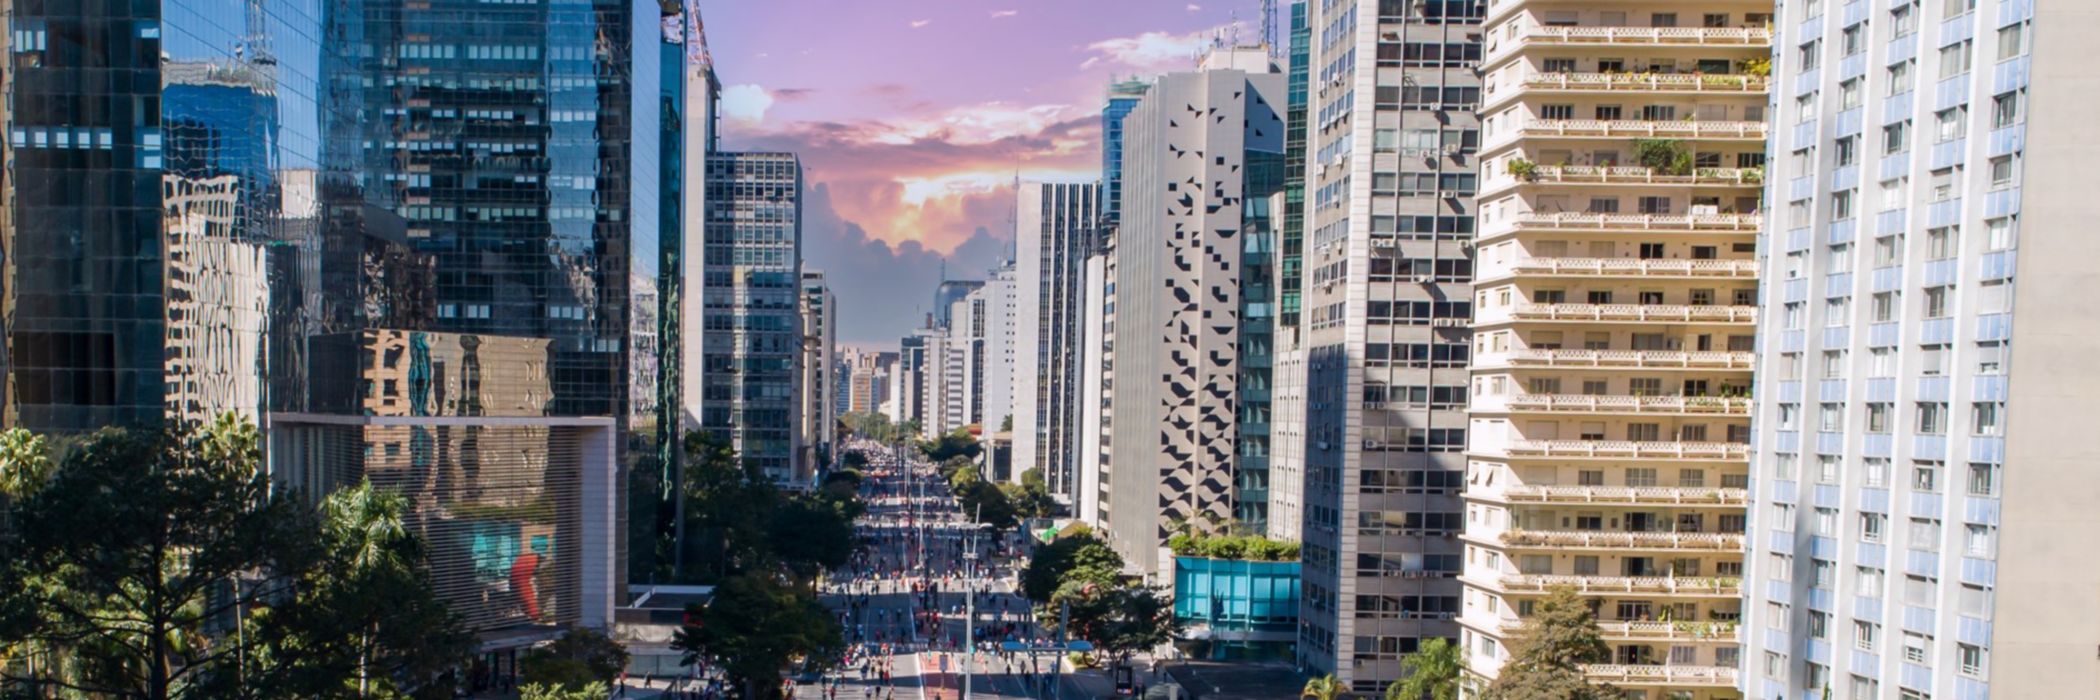 Guida agli affari in brasile